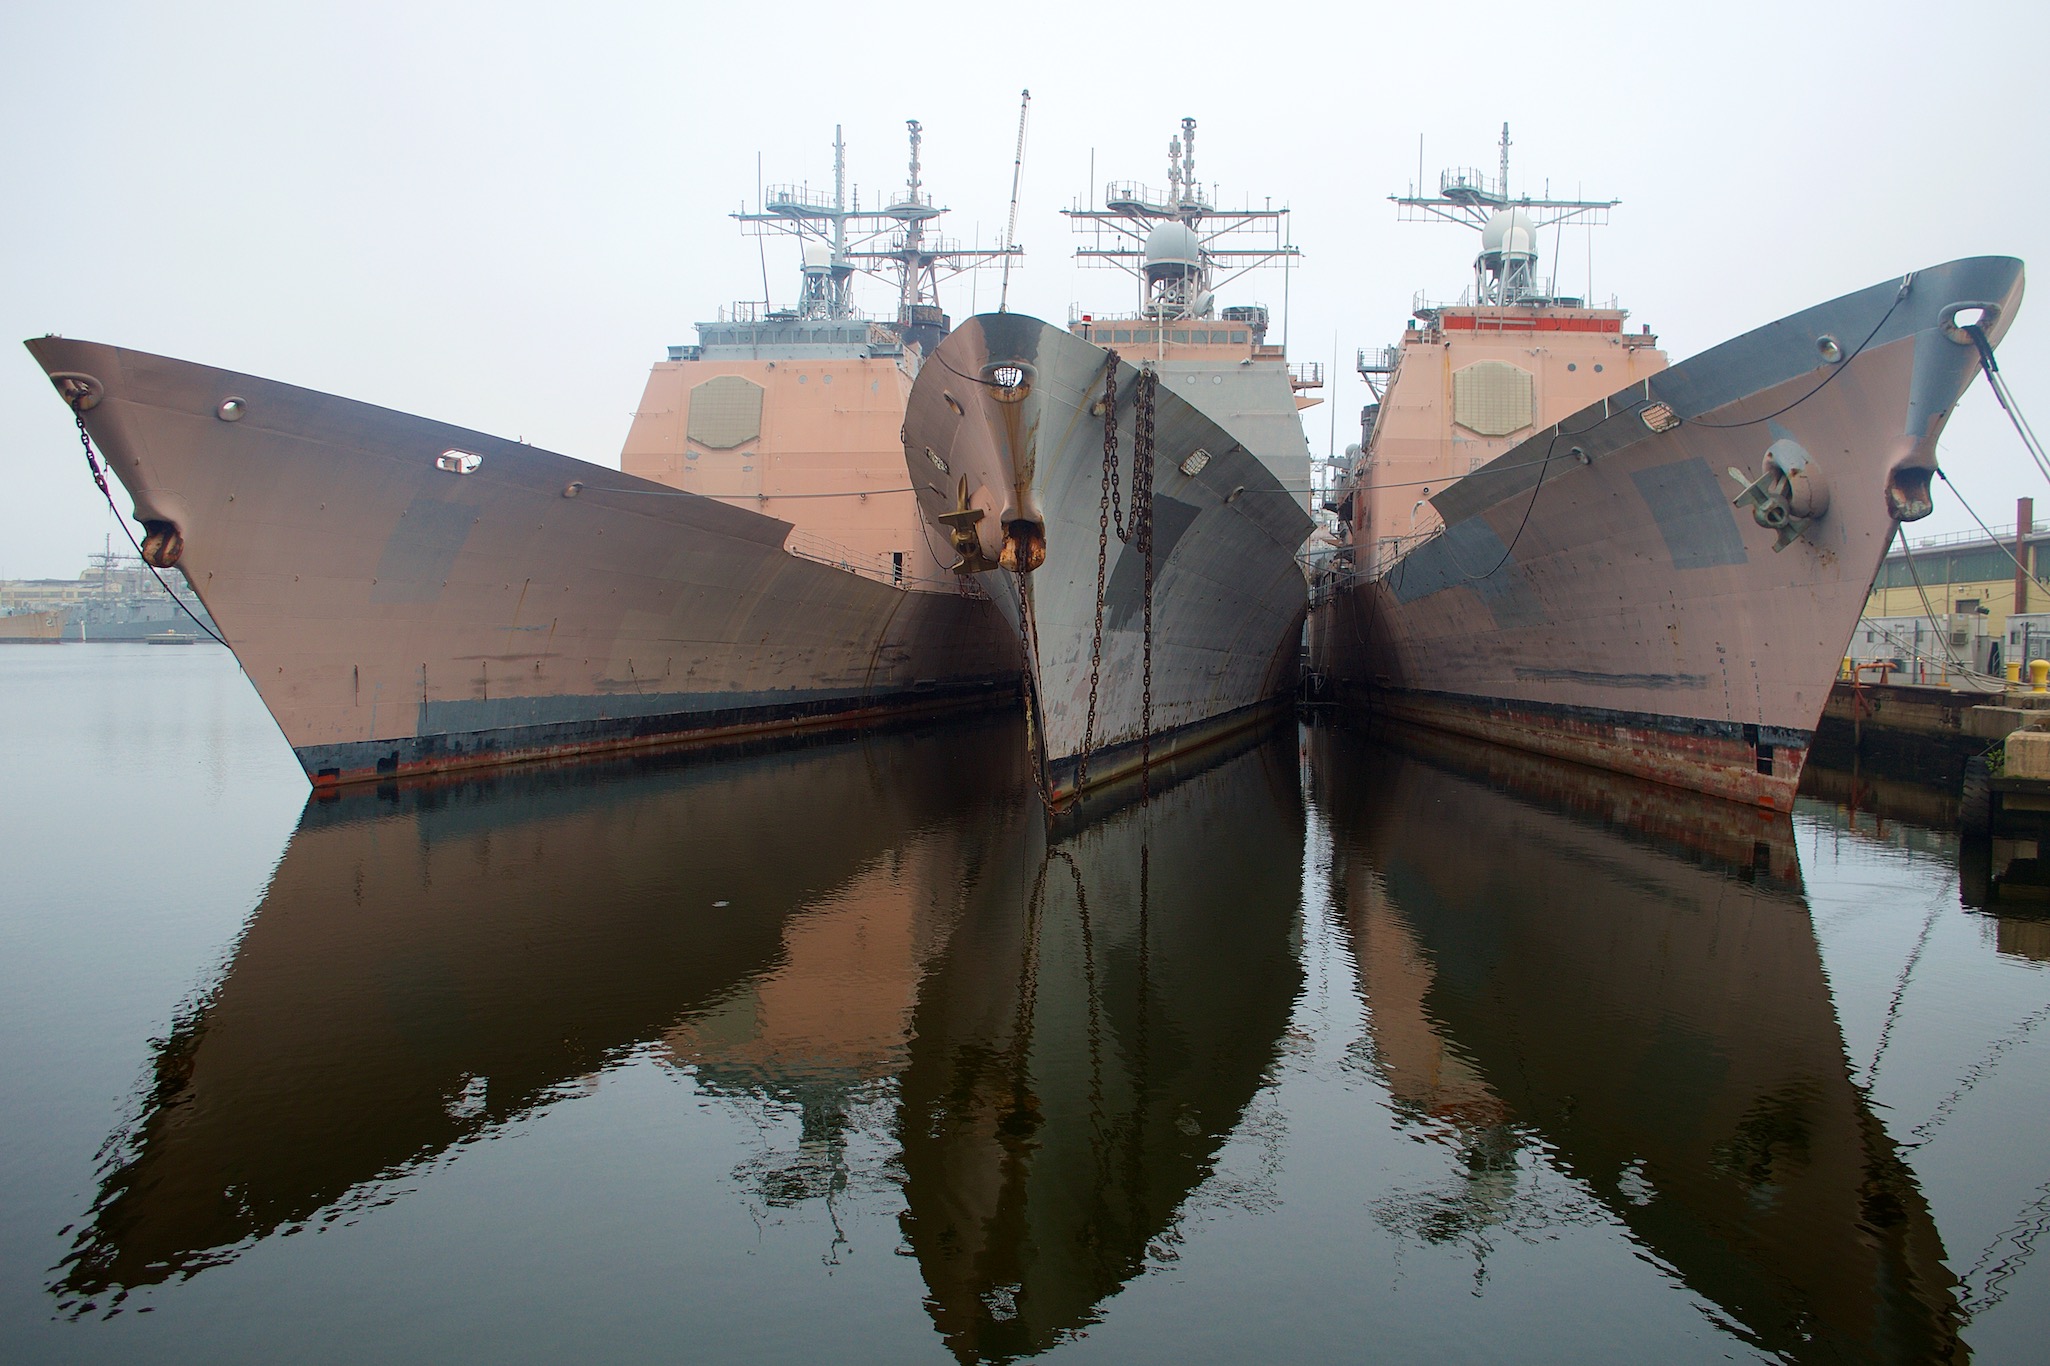 Ships in the Naval Yard in Philadelphia, Pennsylvania